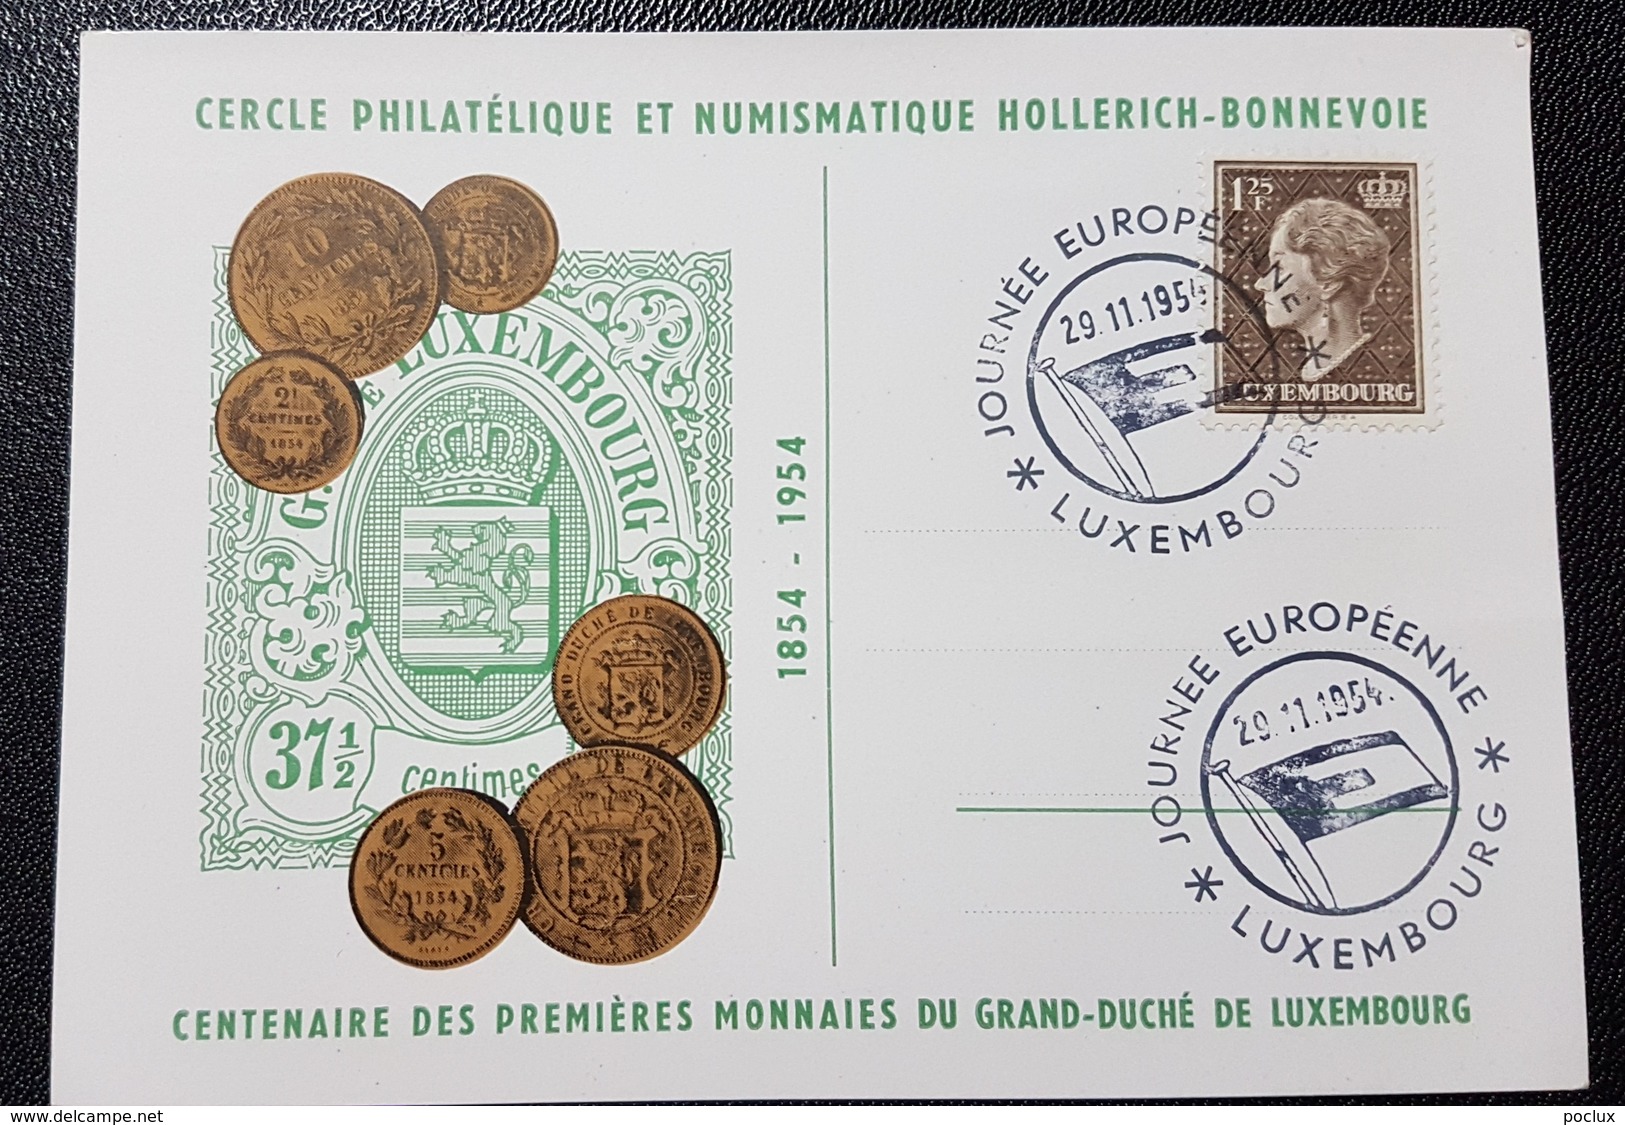 Luxembourg 1954- Journée Européenne Du Timbre 1954- Centenaire De Nos Premières Monnaies Nationales - Tarjetas Conmemorativas